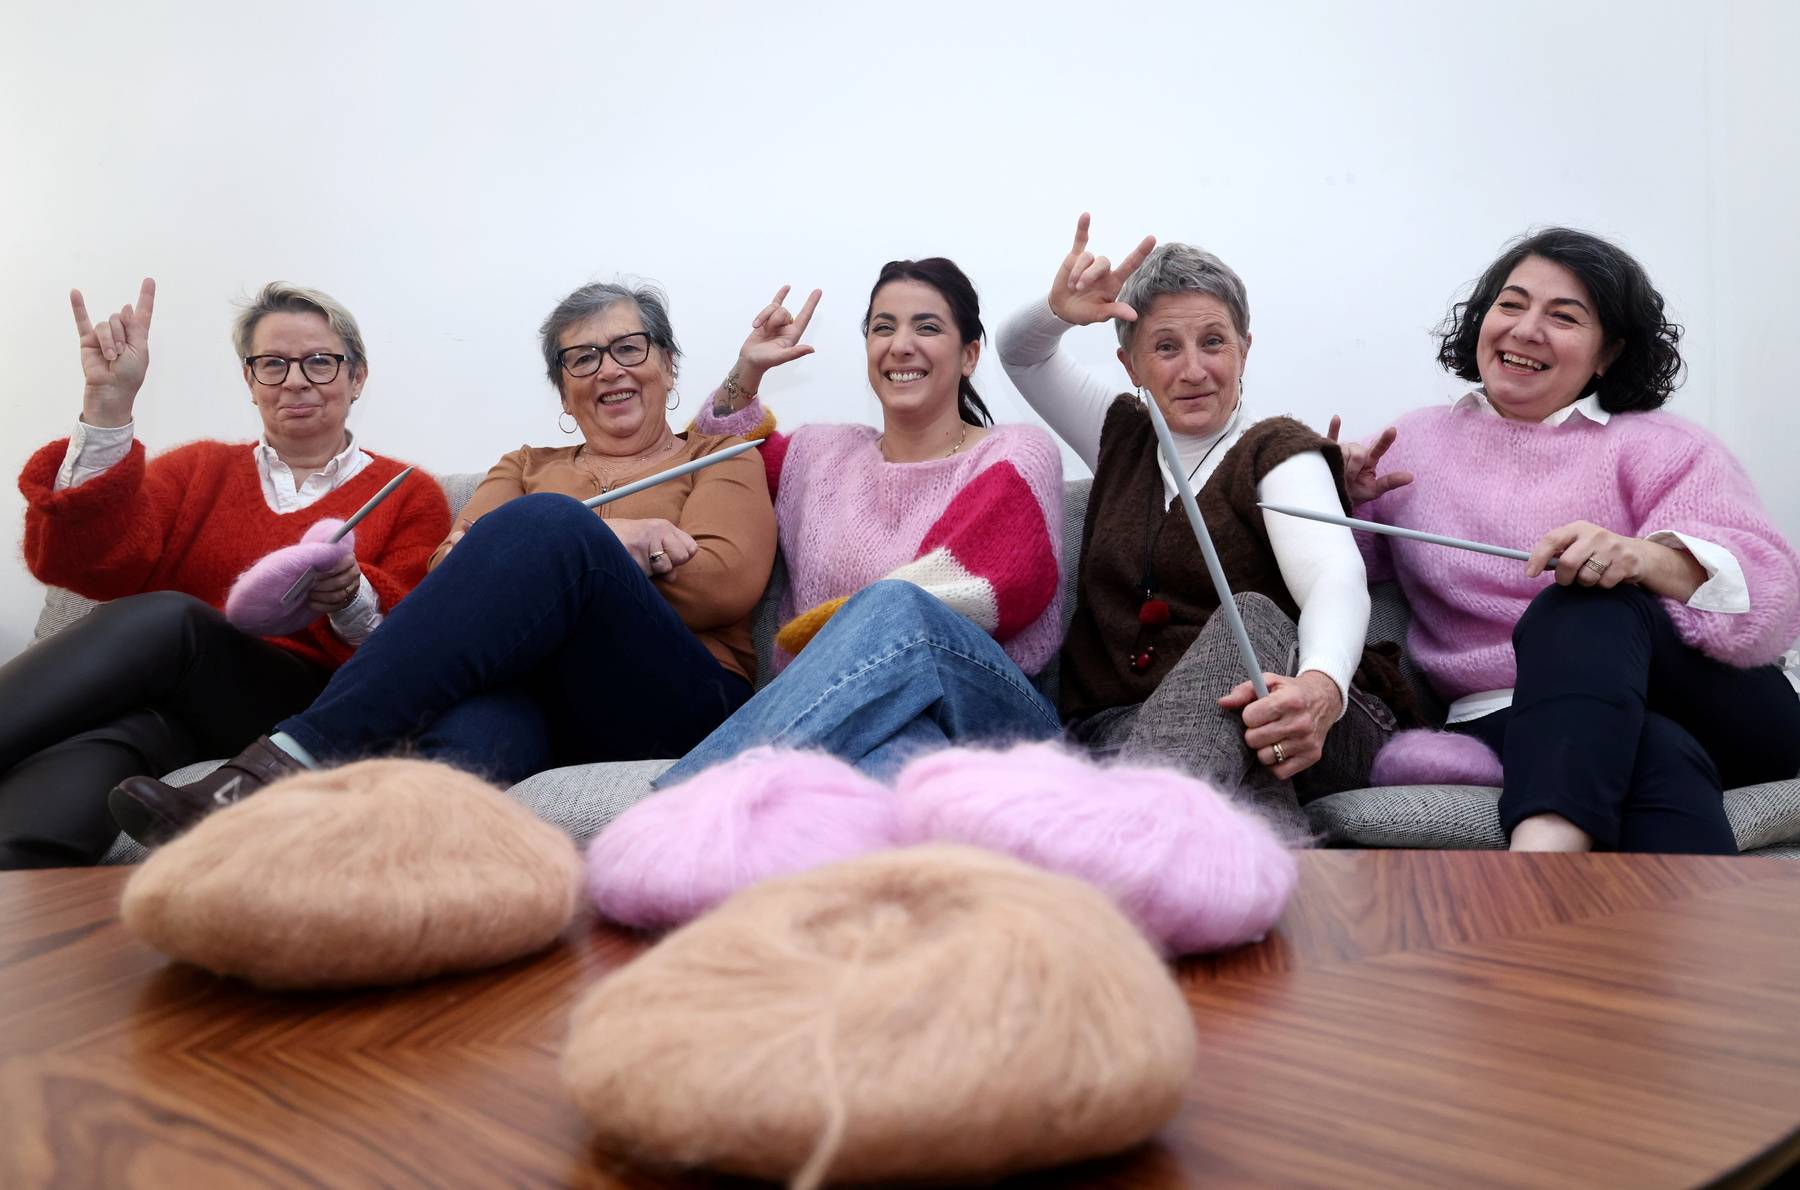 Vidéo : à Marseille, une marque de vêtements tricotés à la main par des mamies